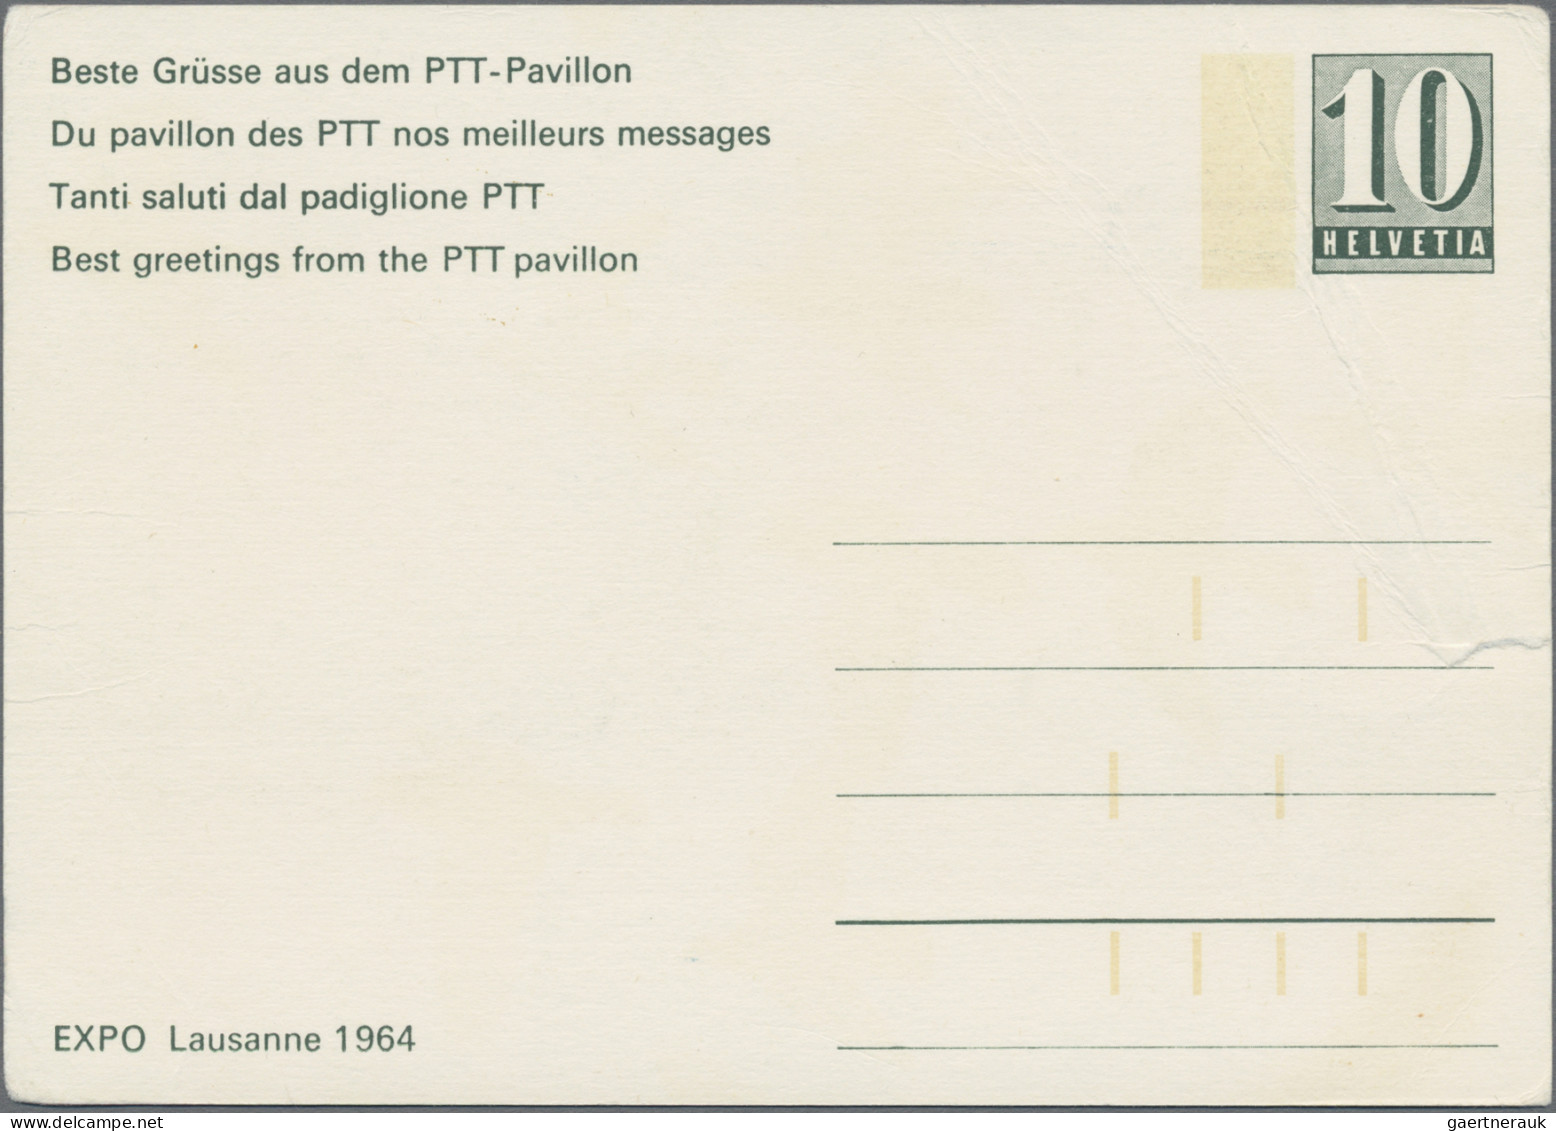 Schweiz - Besonderheiten: 1964, sehr seltener Ersttag-Umschlag "Cept 1962" der P